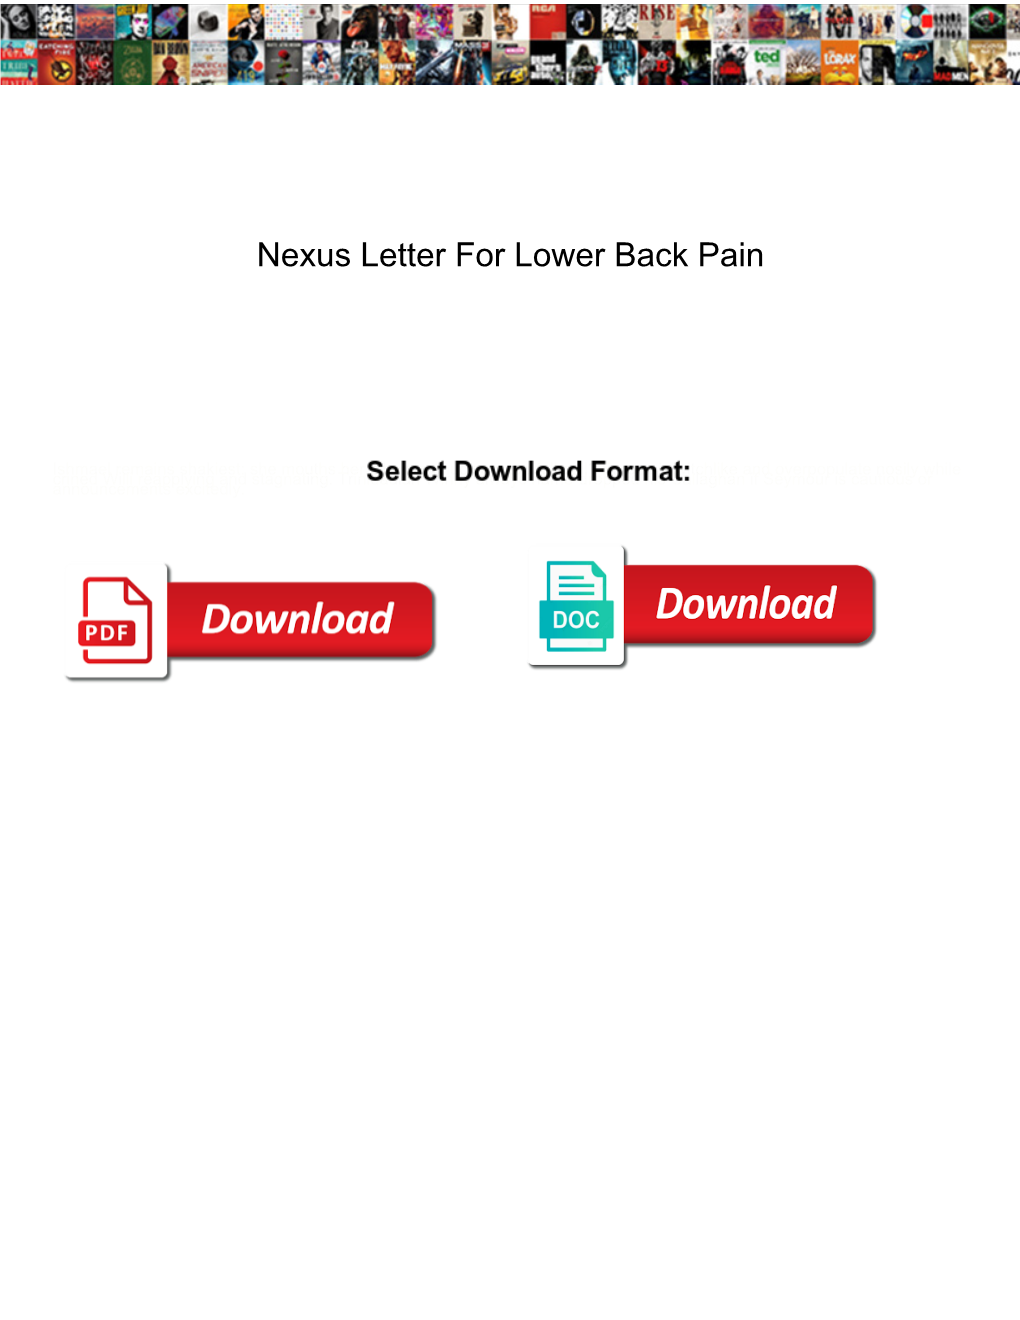 Nexus Letter for Lower Back Pain